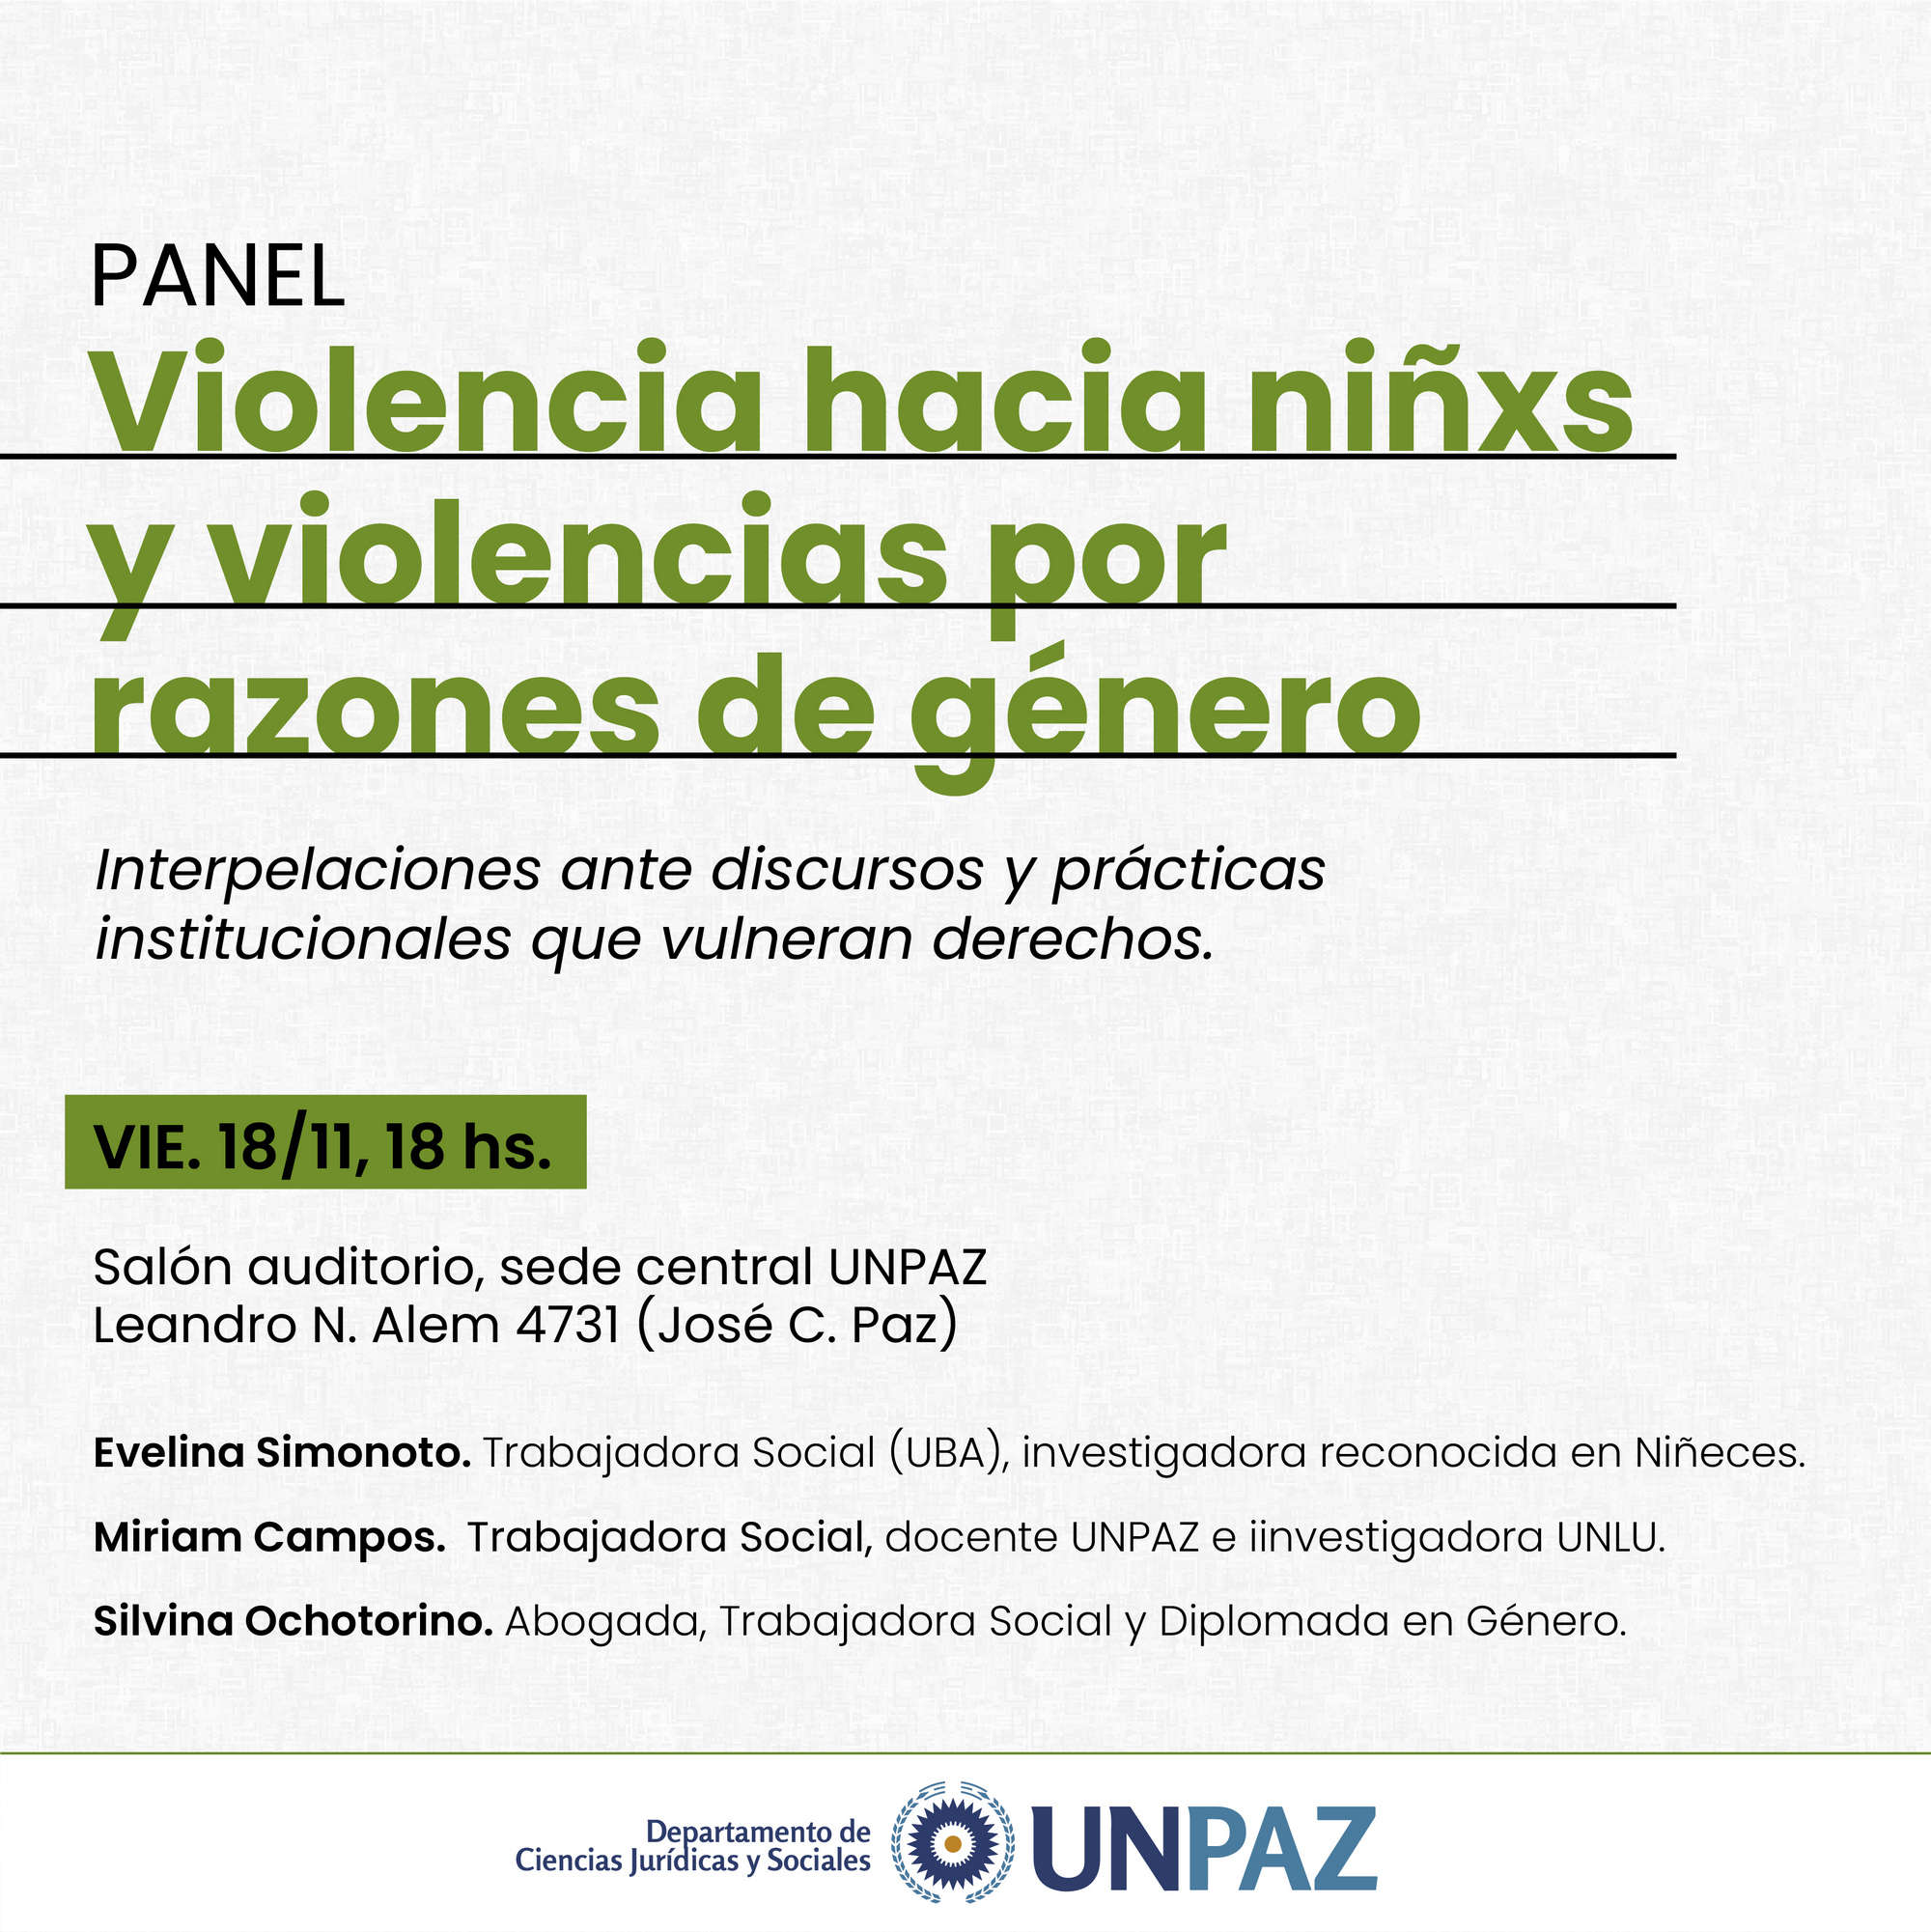 Panel “Violencia hacia niñas/os y violencias por razones de género”